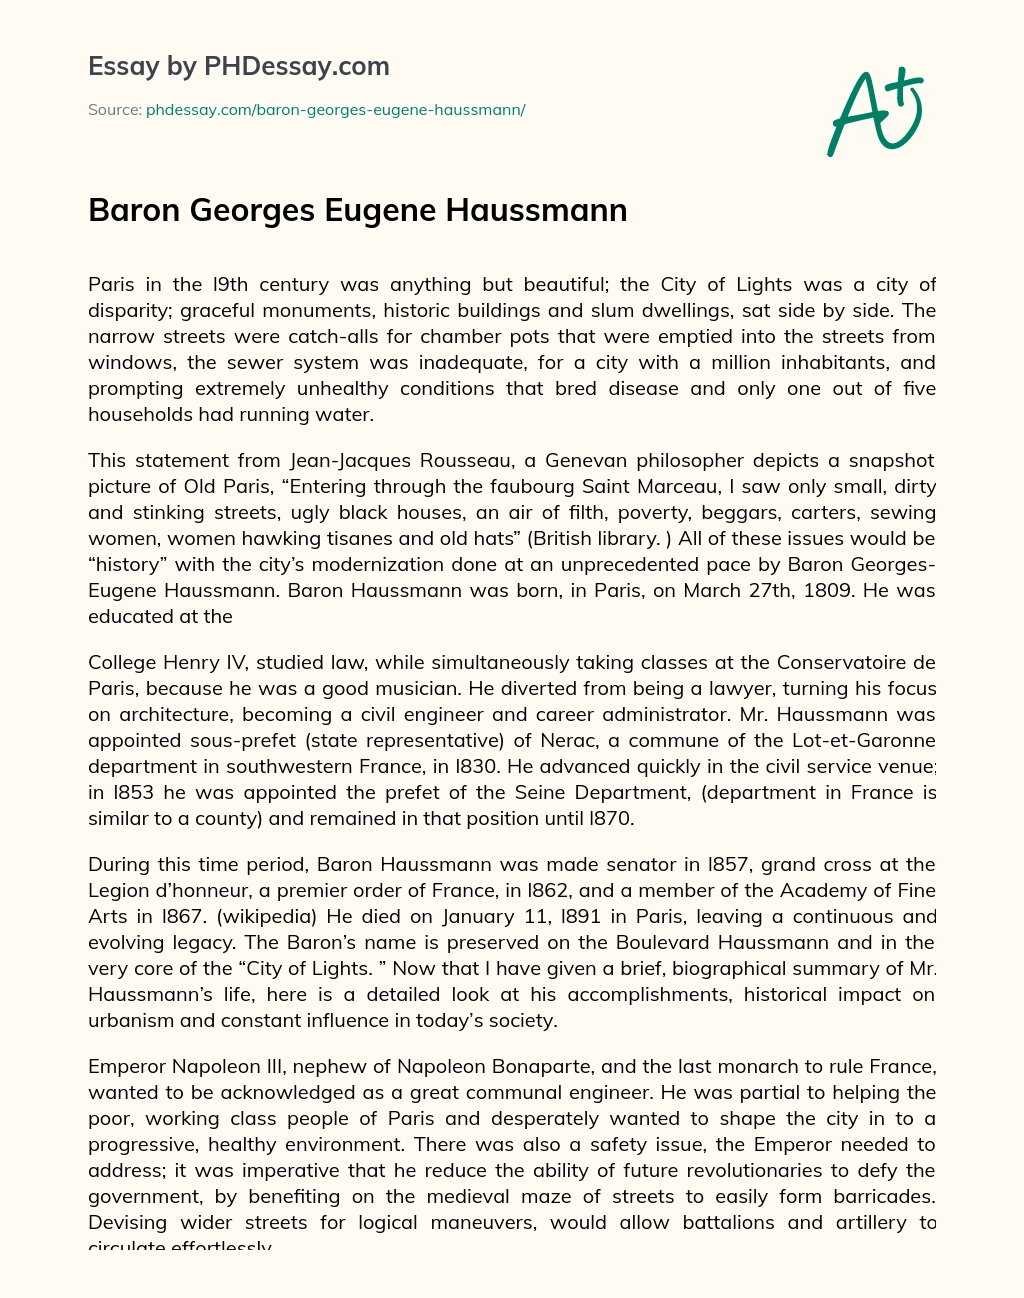 Baron Georges Eugene Haussmann essay